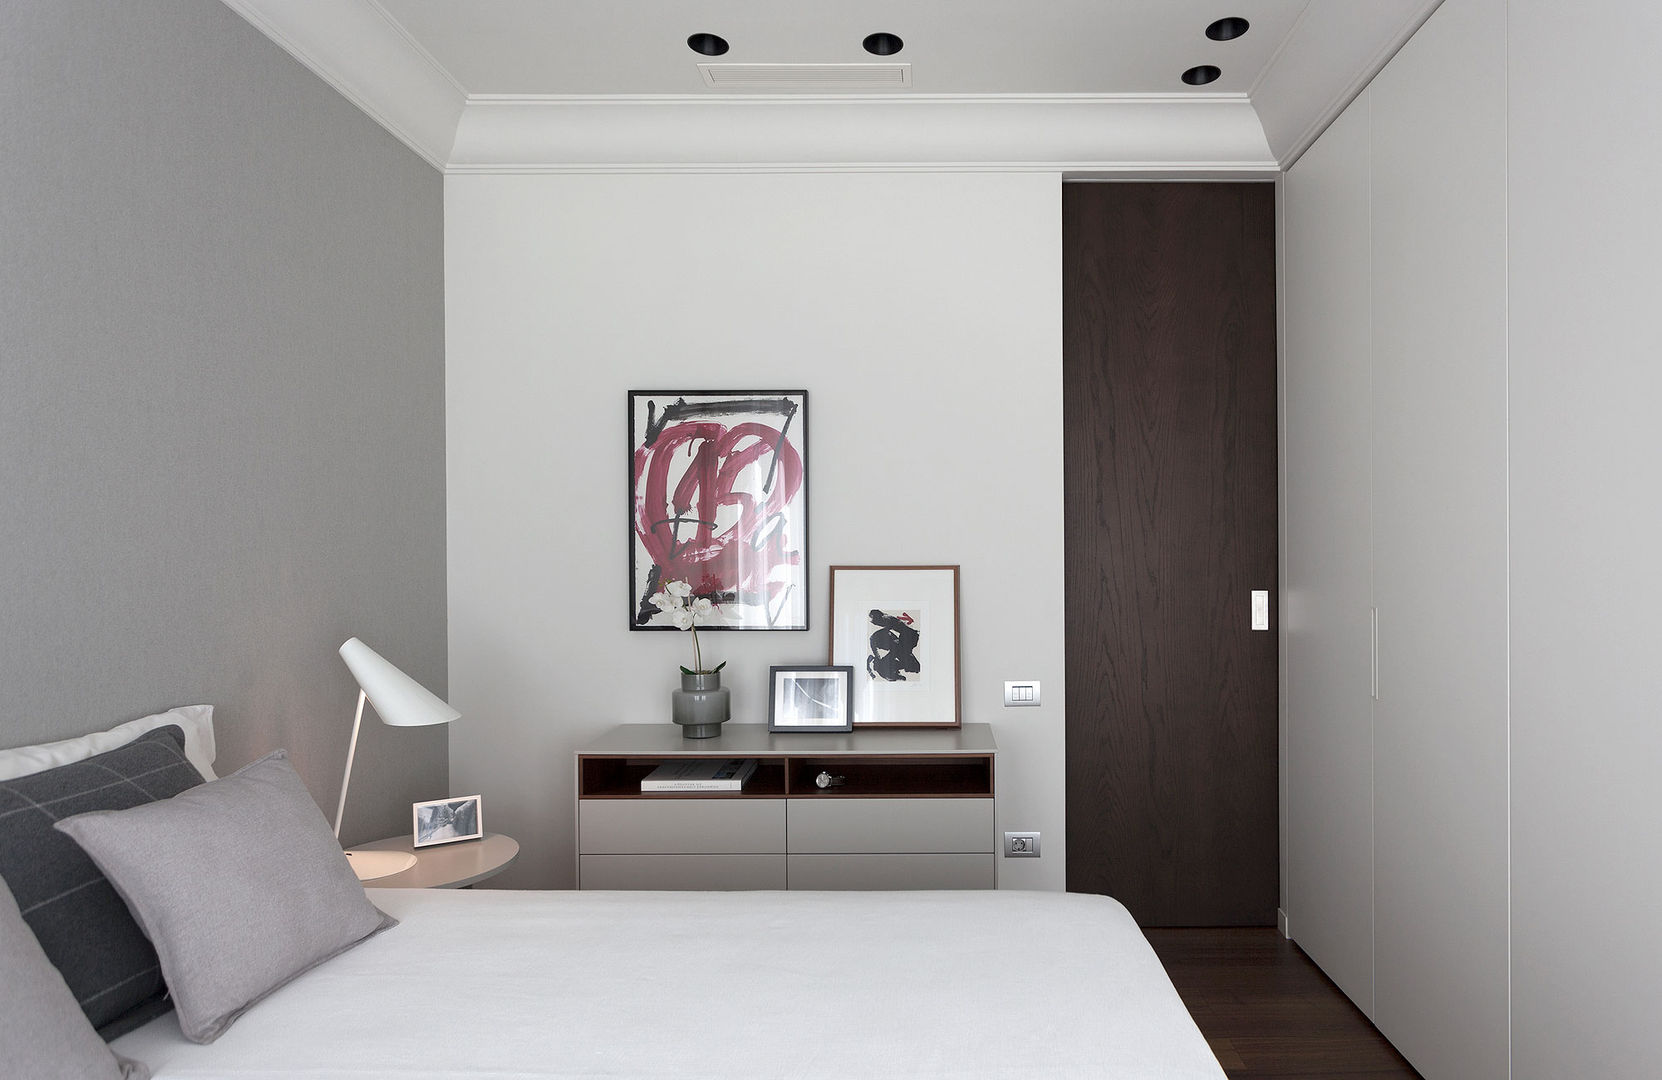 Dormitorio principal en tonos neutros decorado con arte MANUEL GARCÍA ASOCIADOS Cuartos de estilo moderno